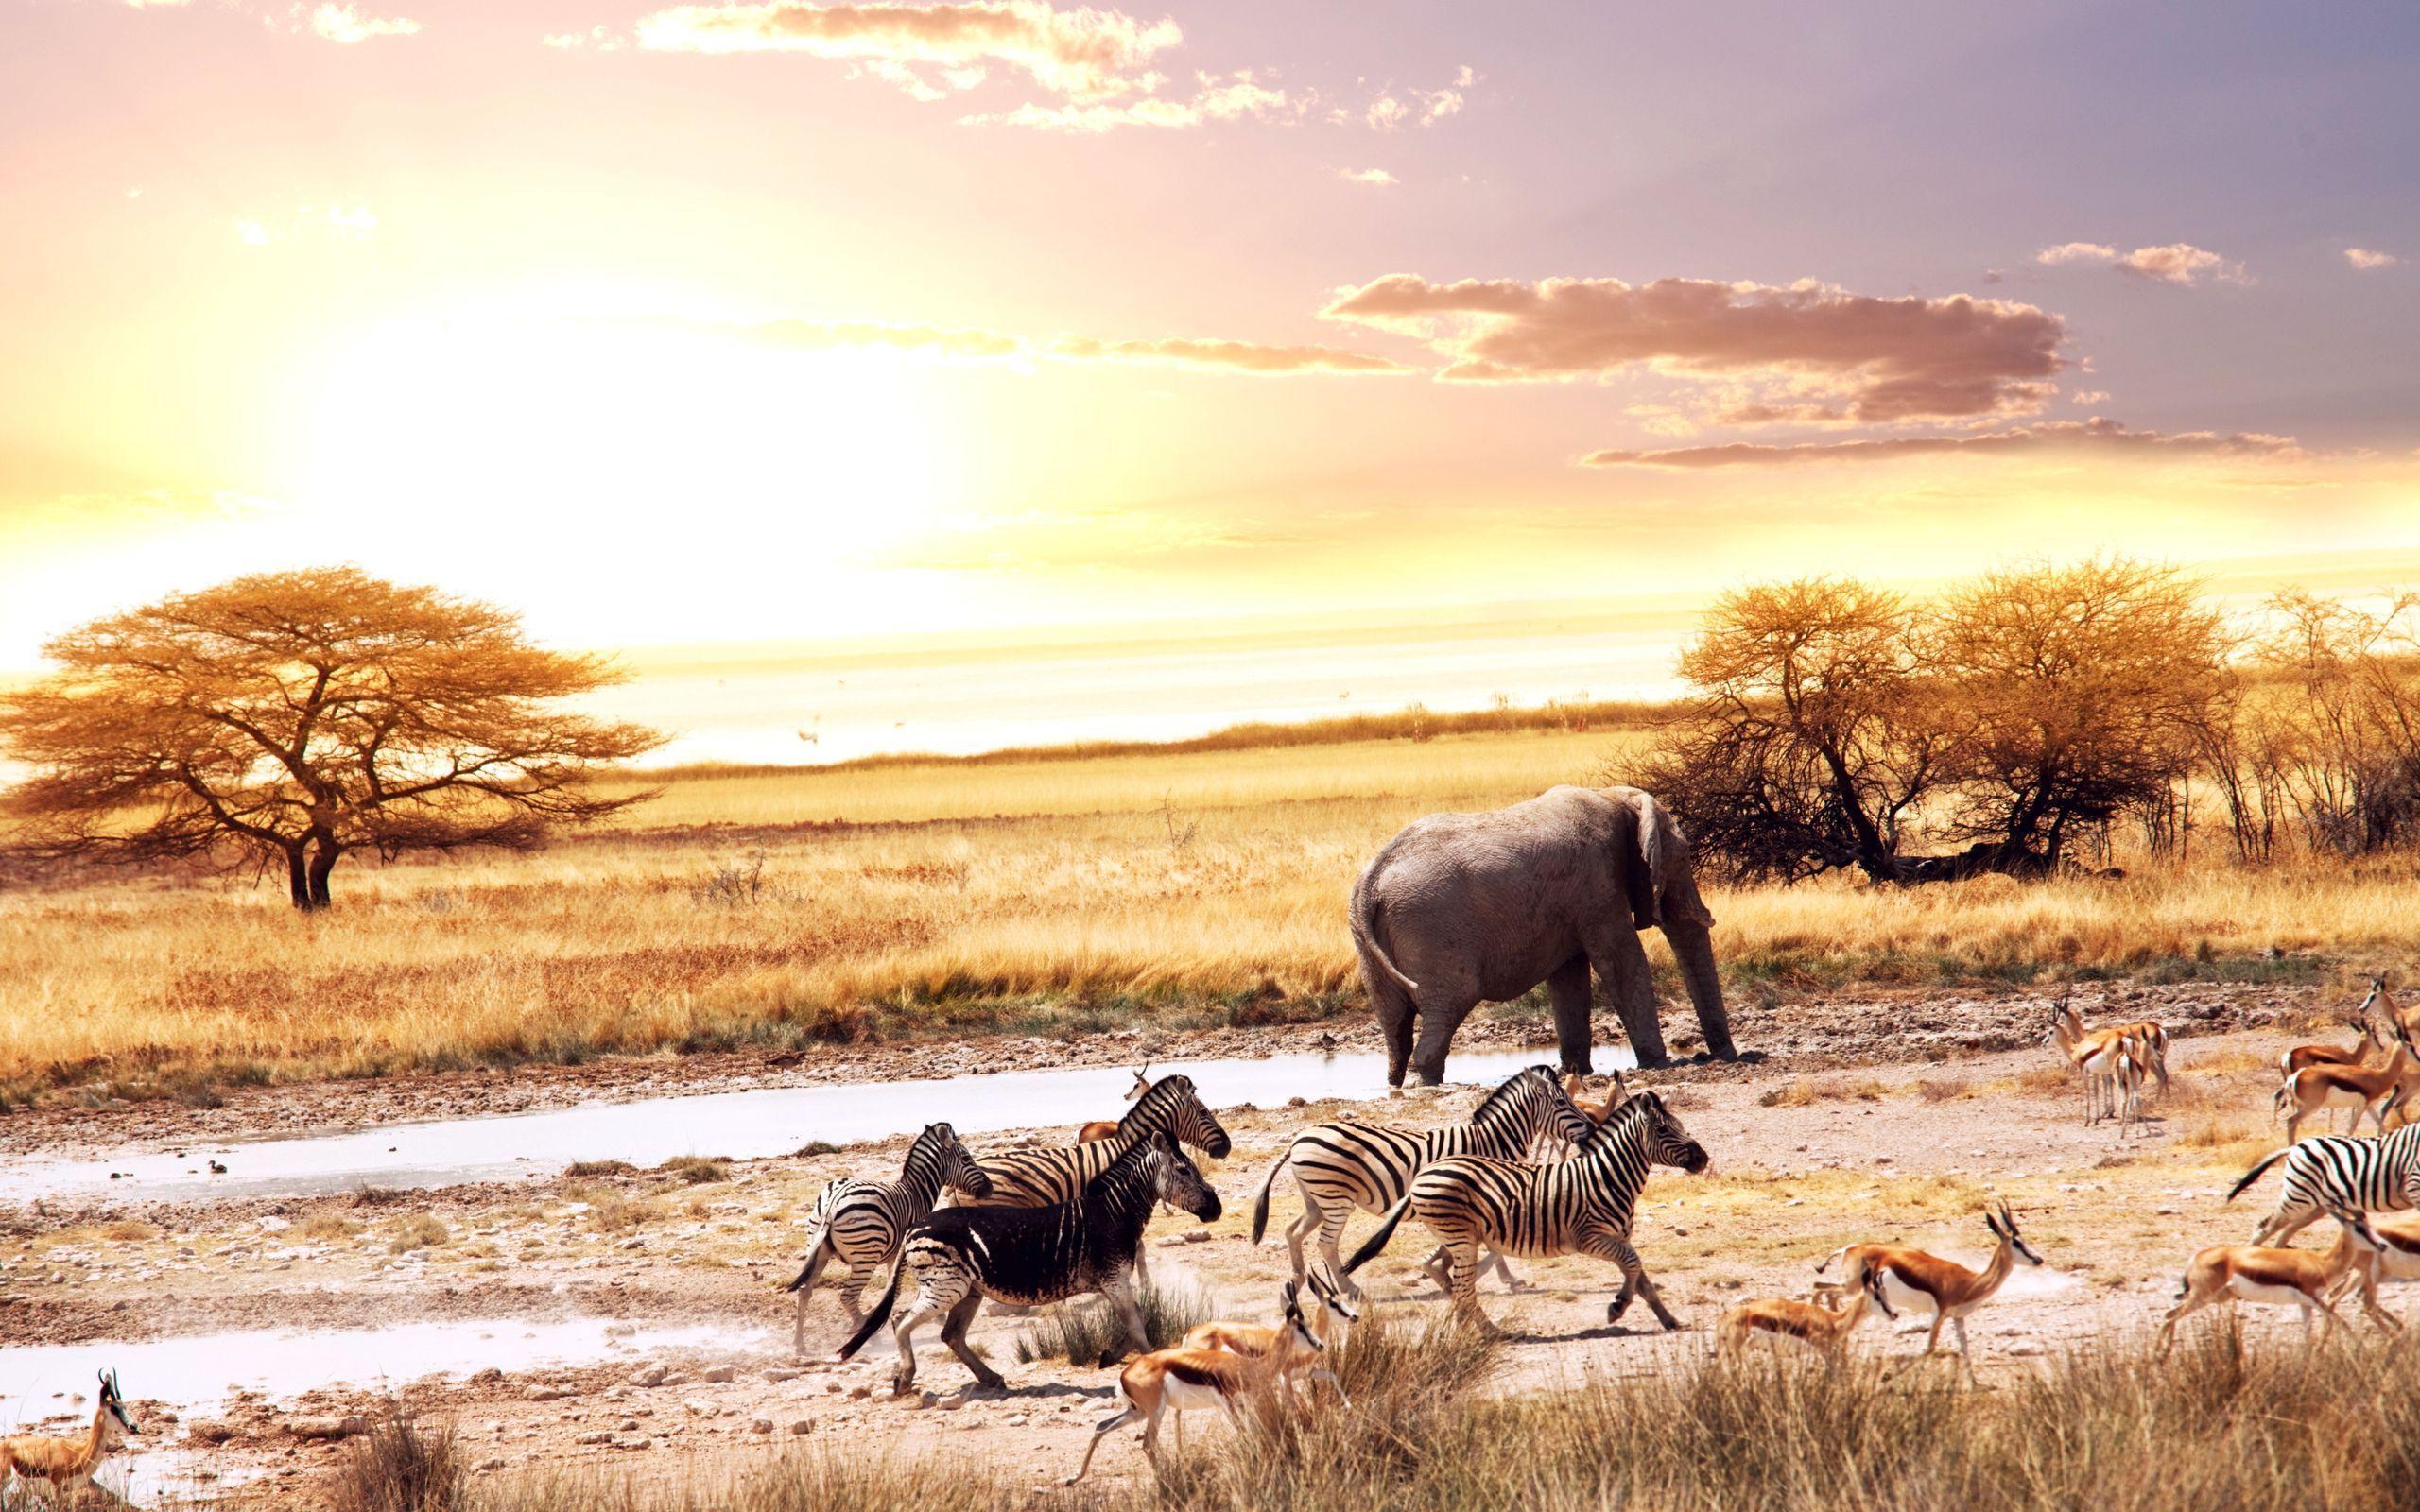 Wild Animals in Africa Wallpaper « Wallpaperz